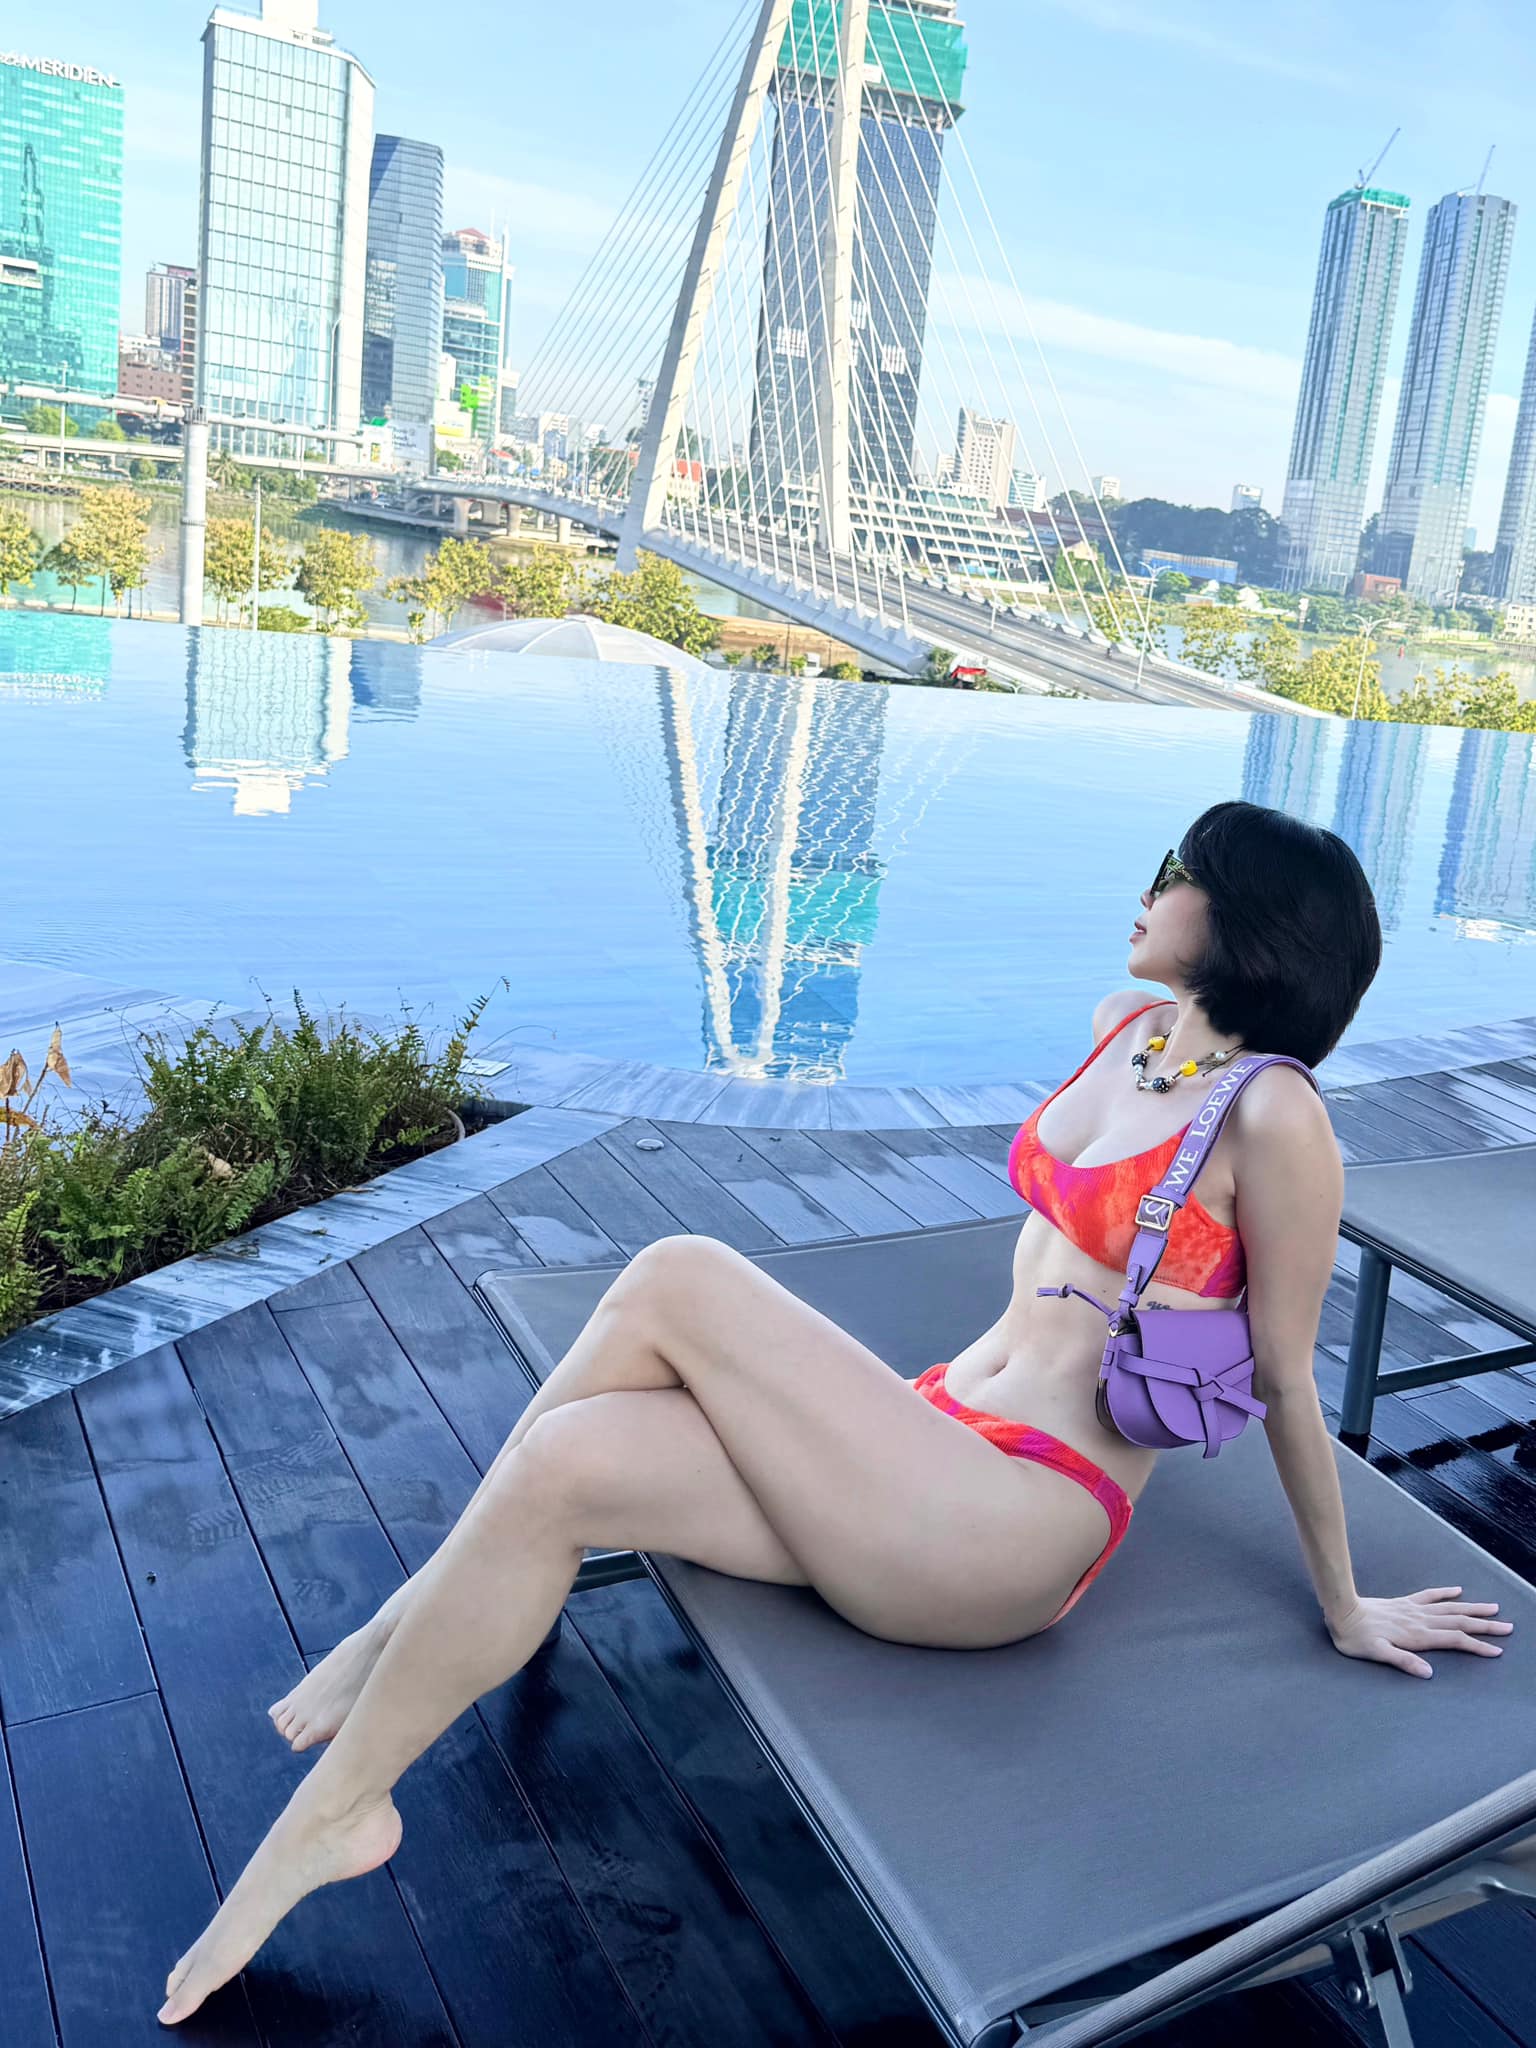 Tóc Tiên mặc bikini giữa tin đồn mang thai, fan trầm trồ 'thích cái body này quá'- Ảnh 5.